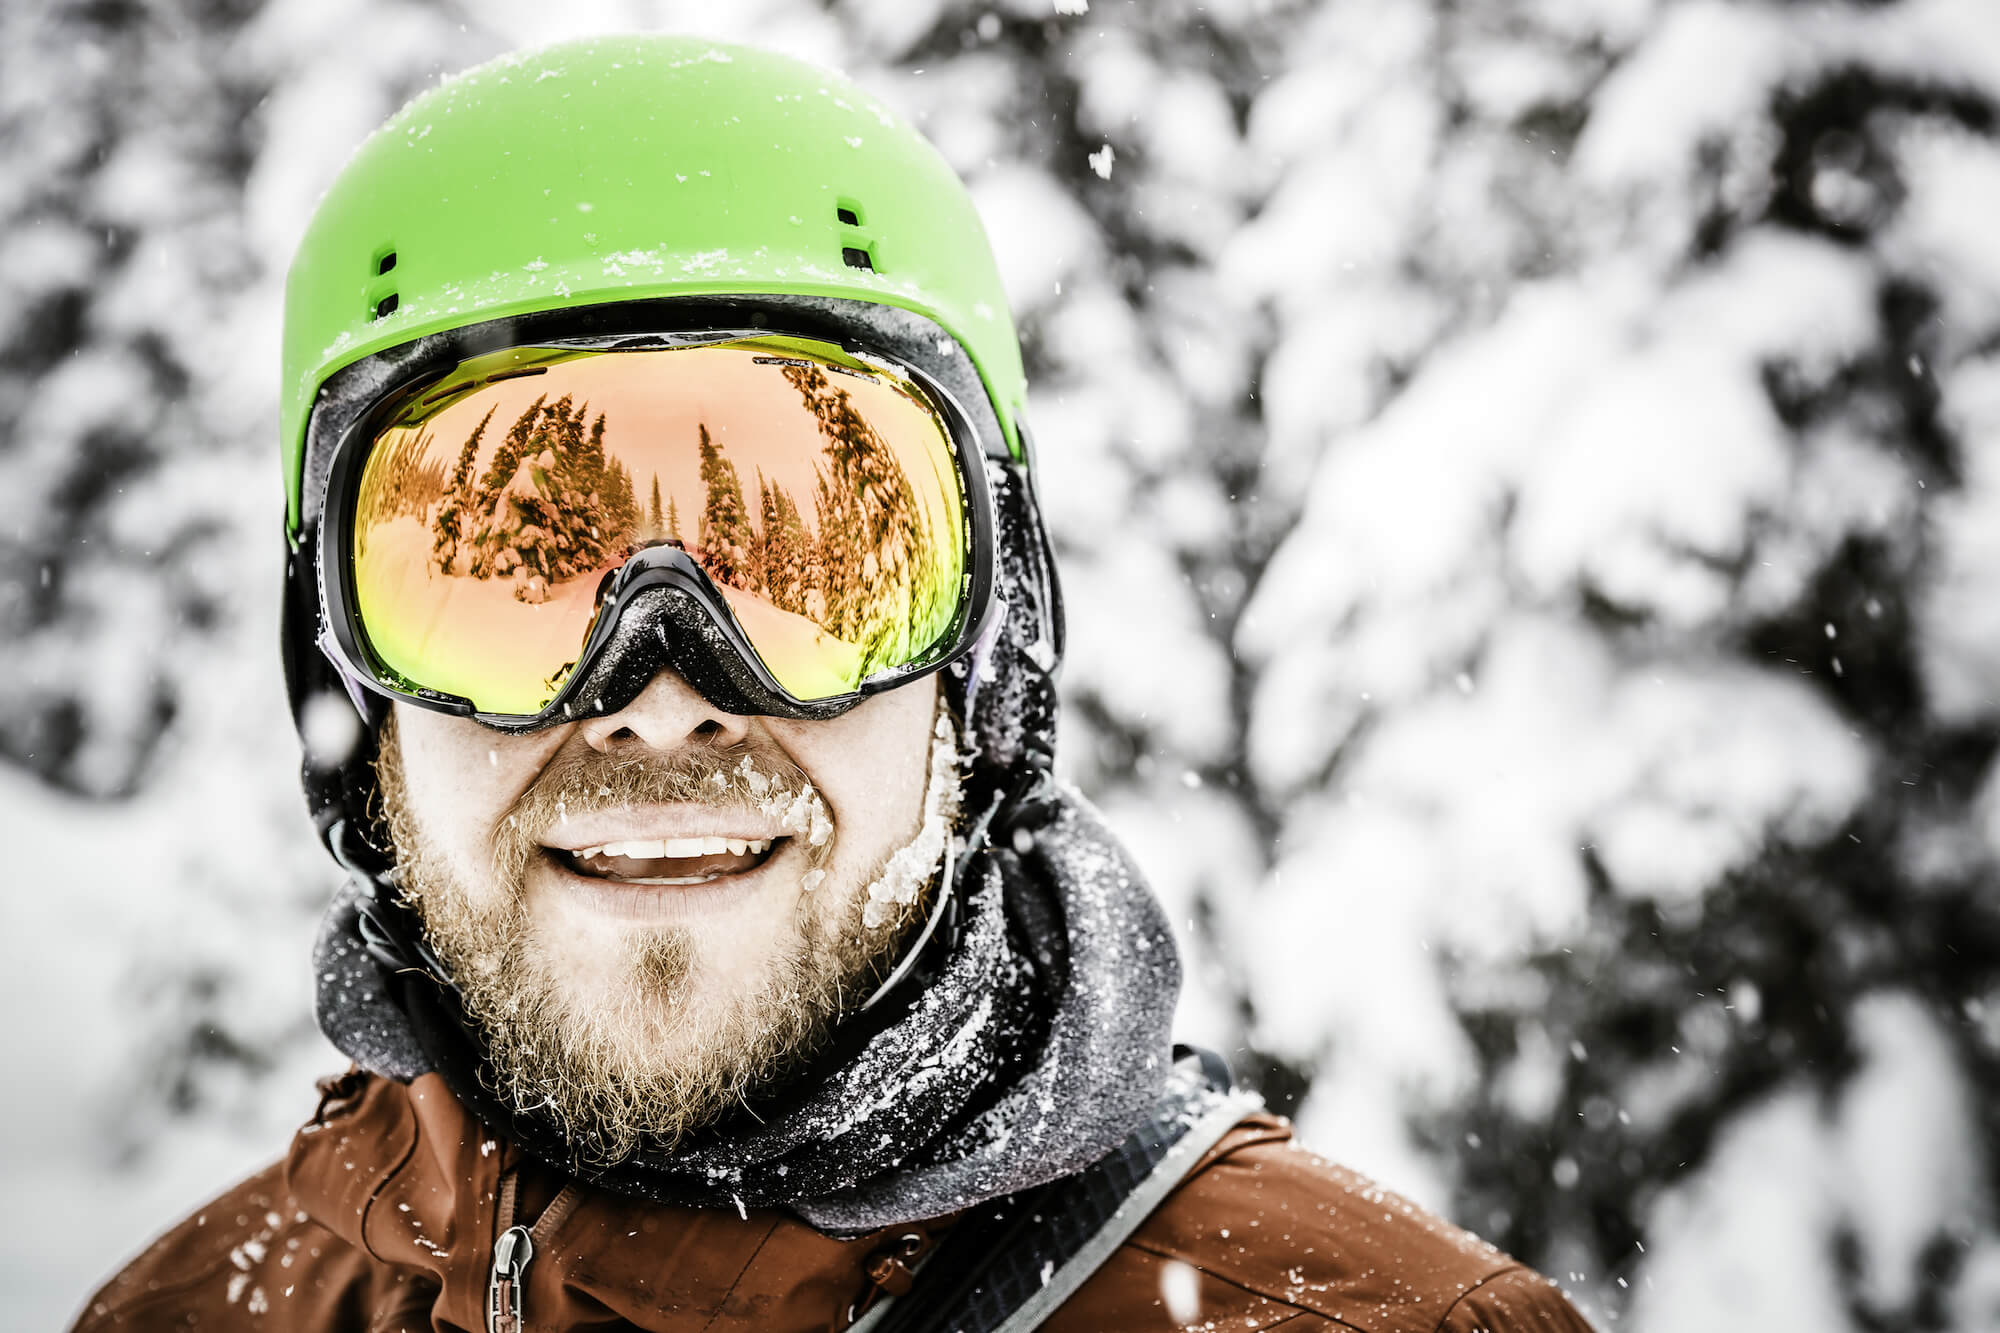 Qu'est-ce qui fait un bon masque de ski ?